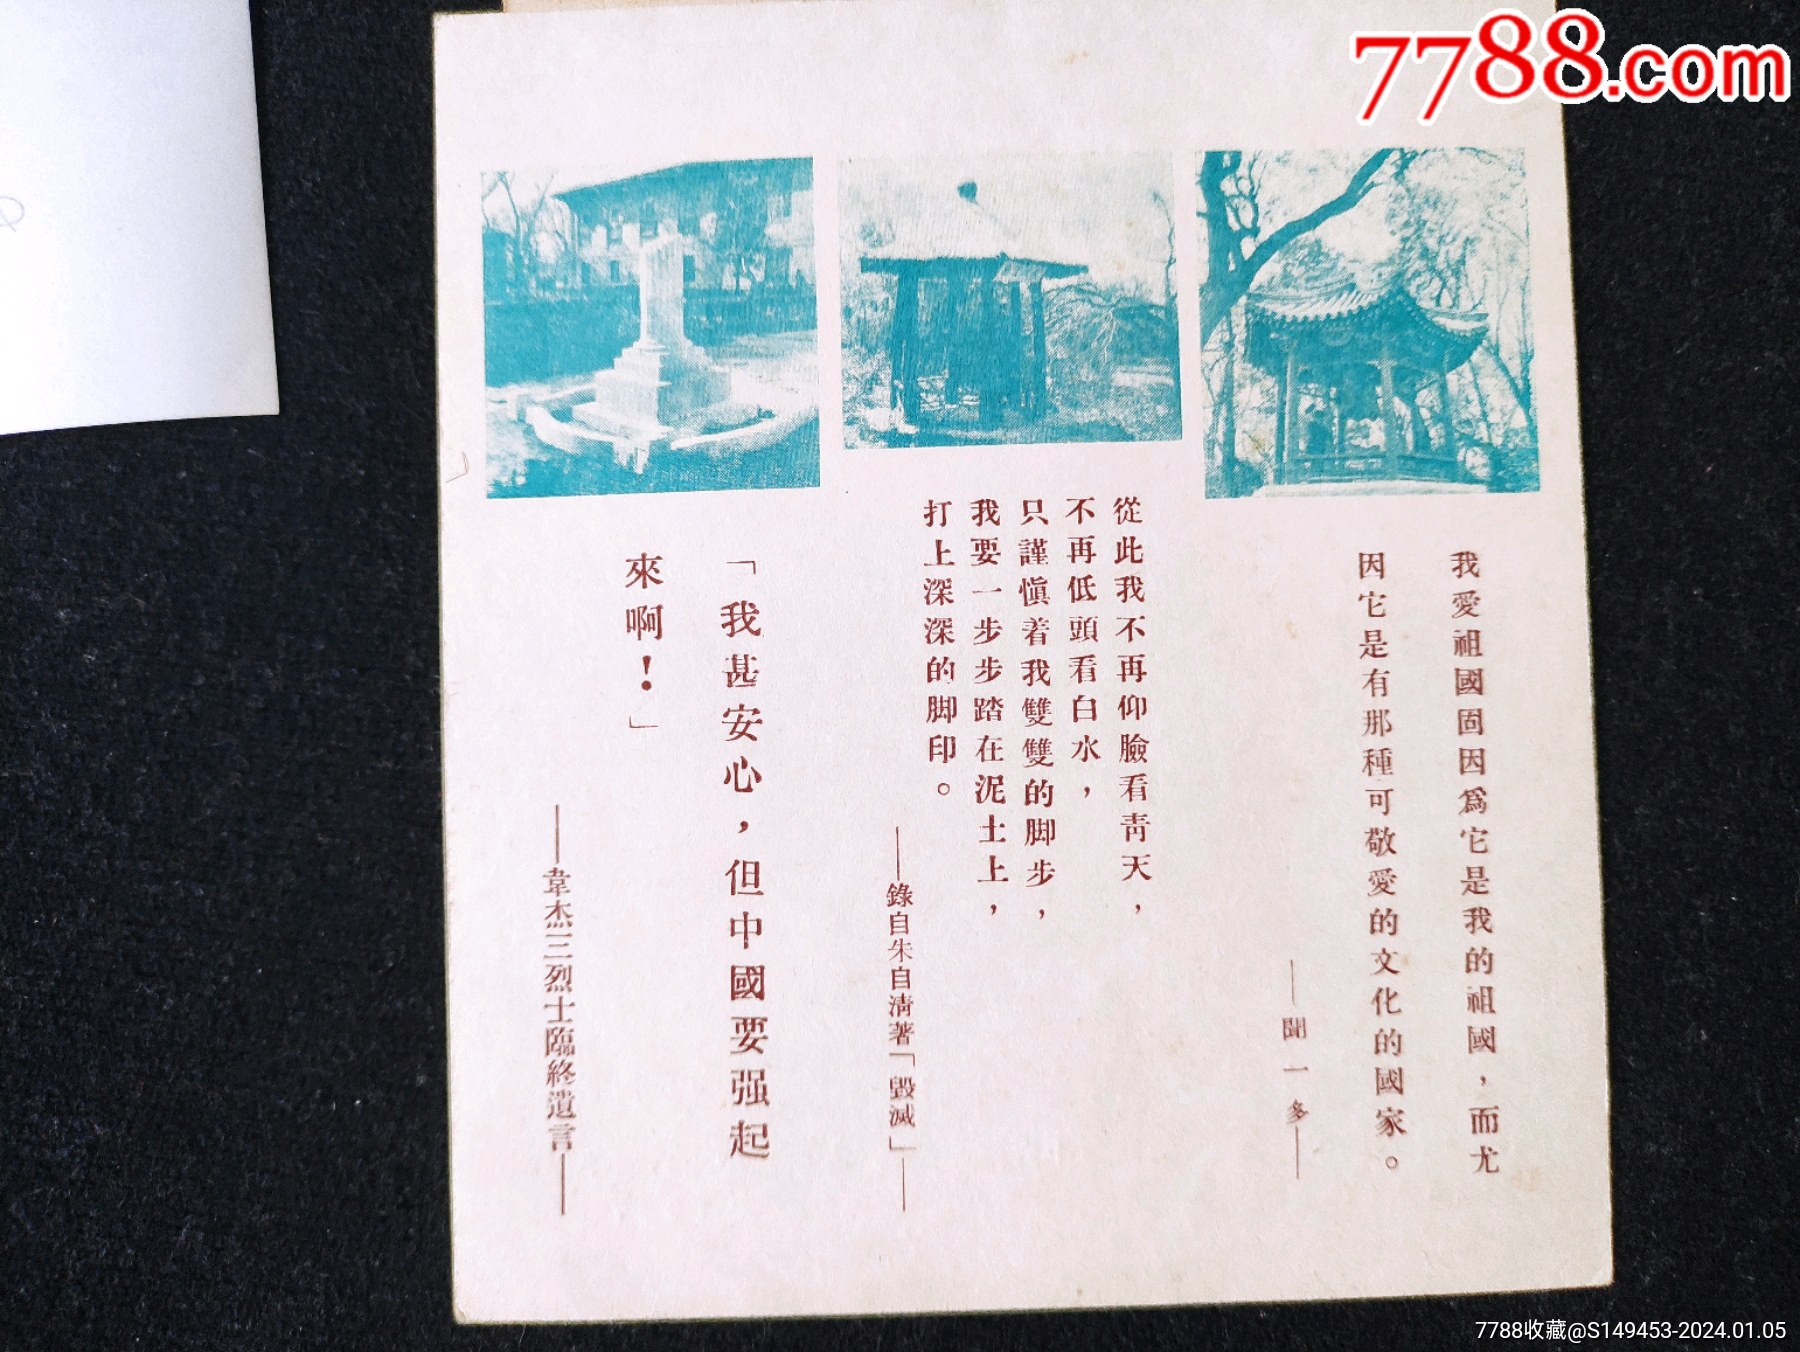 清華校慶46周年(1957)書簽設計原稿一組_價格355元_第8張_